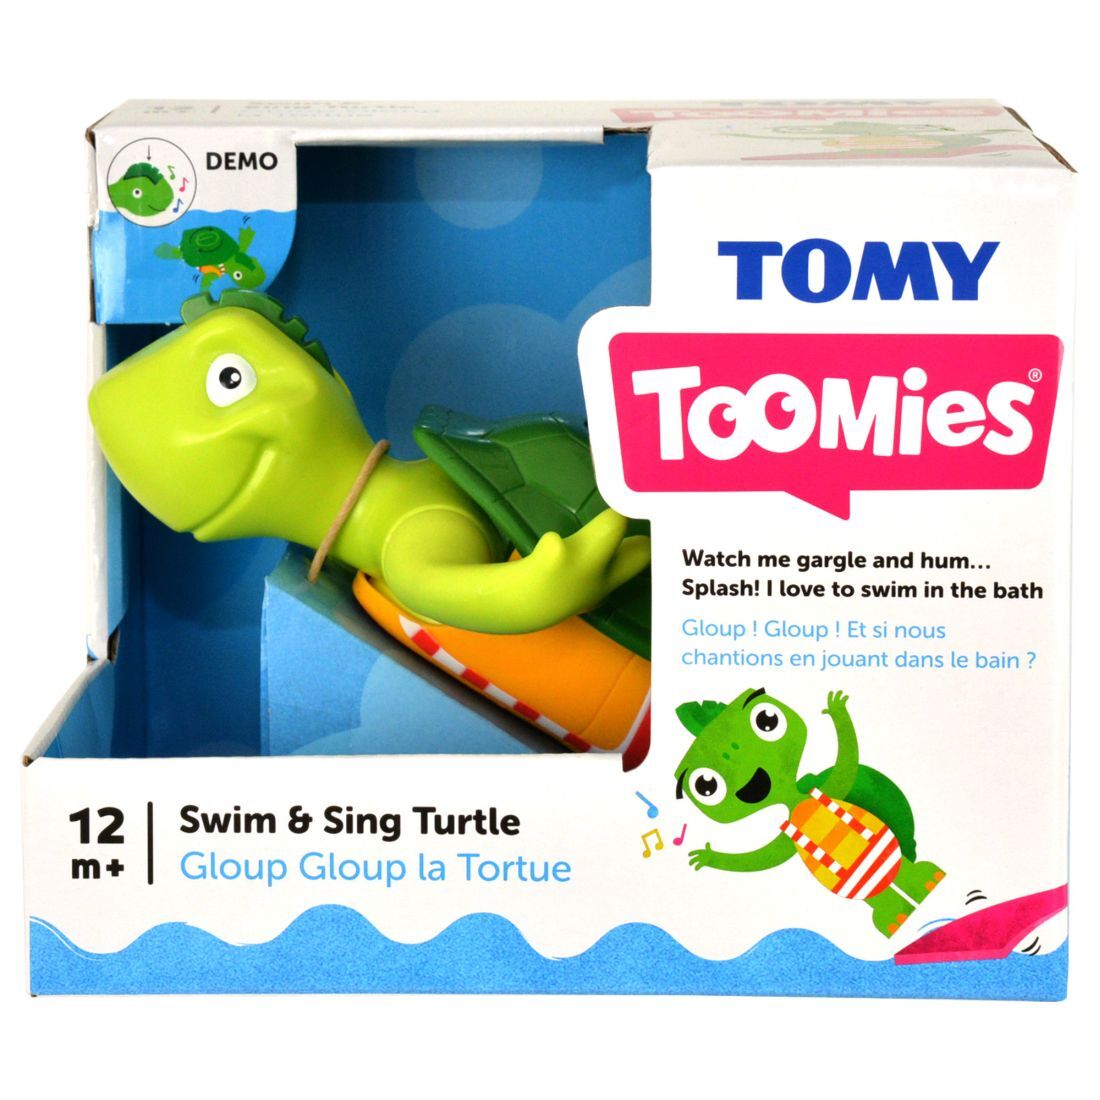 Testoasa cantareata, Tomy Toomies